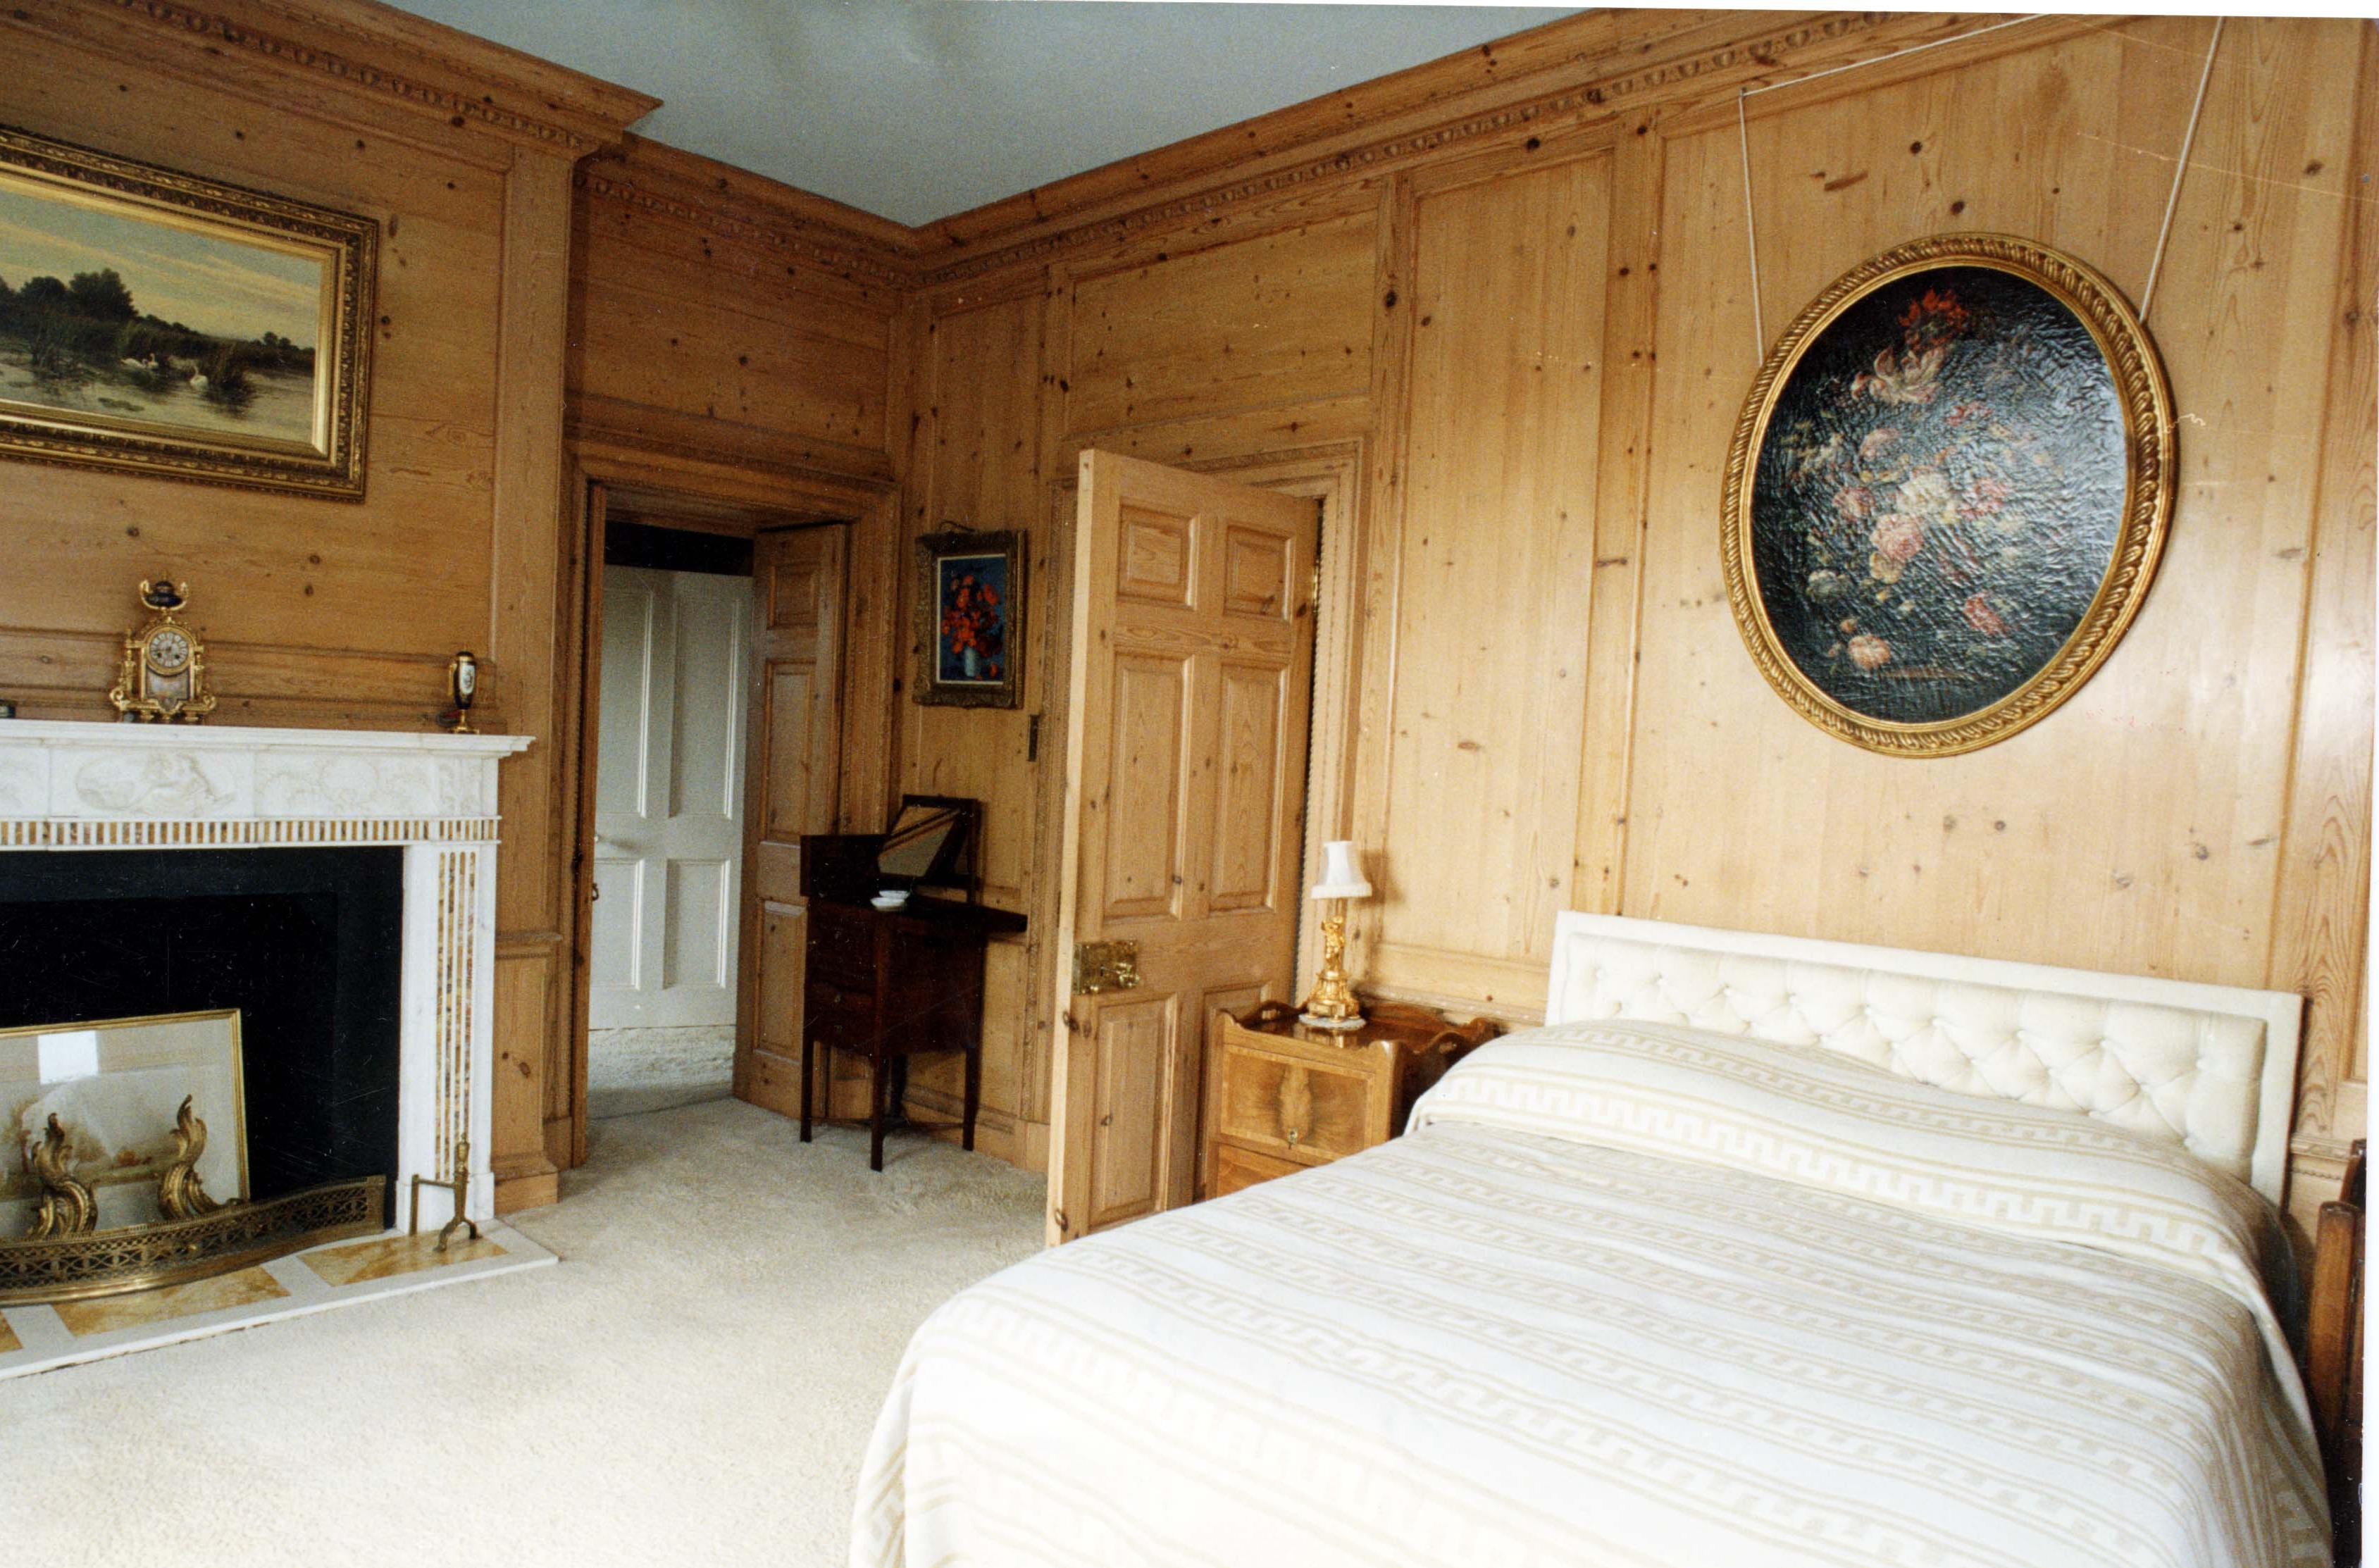 Die Innenräume sind mit Holzdetails und Möbeln aus dunklem Holz durchsetzt